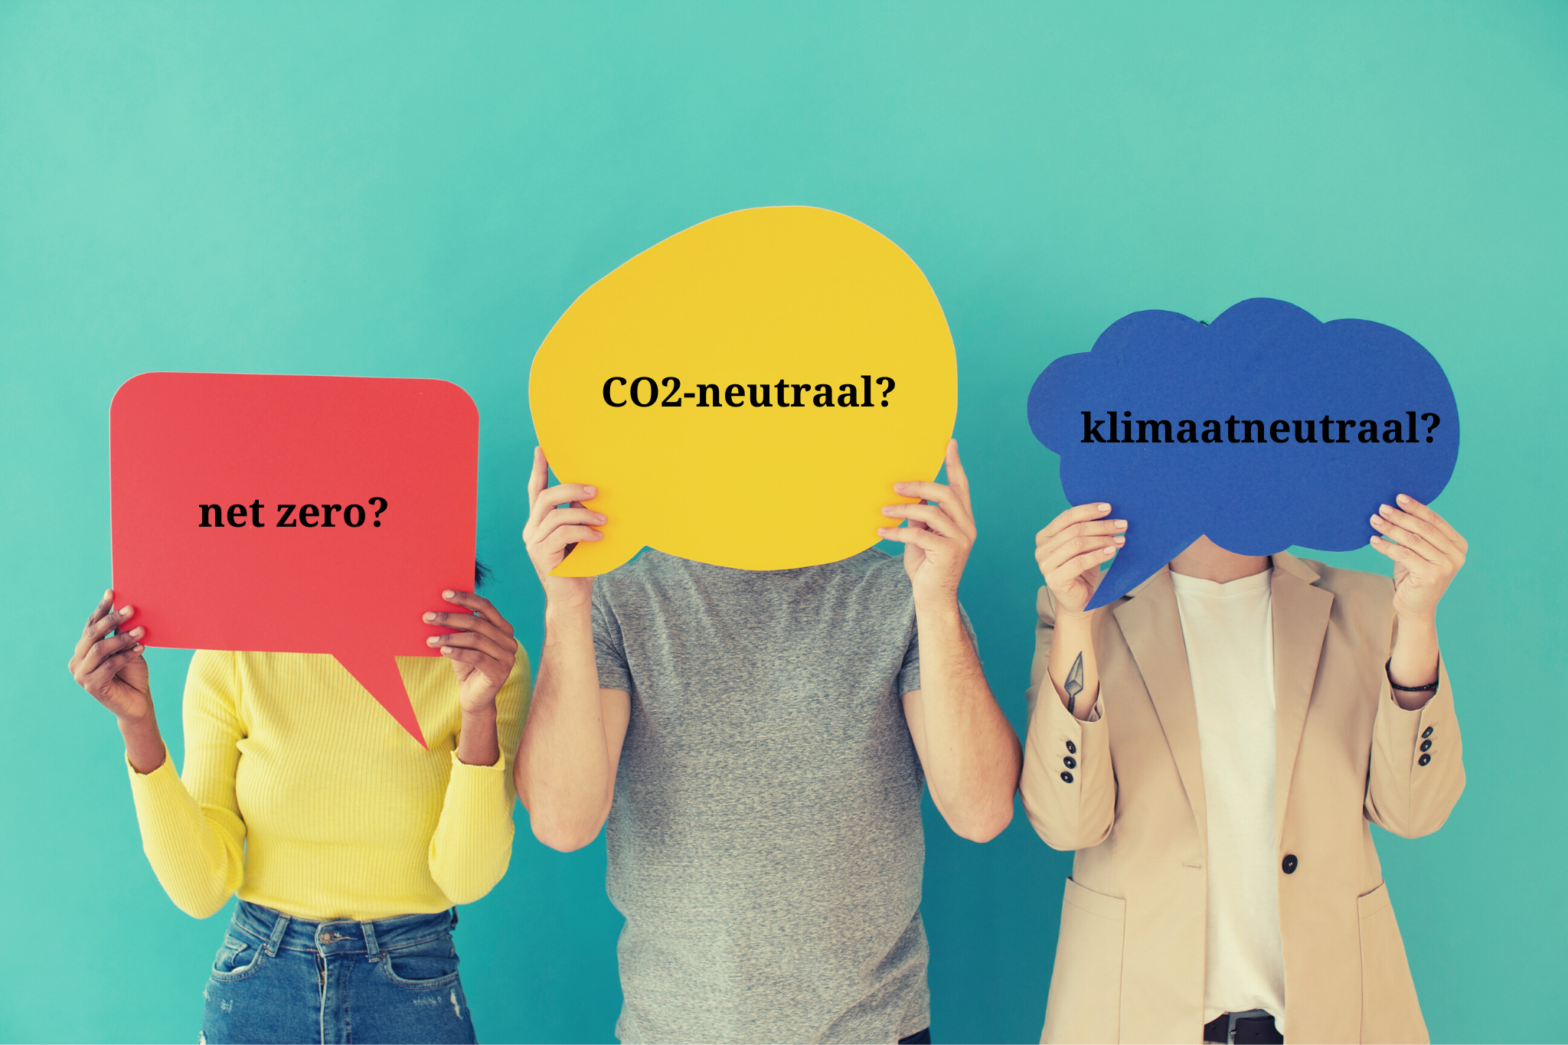 net zero, CO2-neutraal en klimaatneutraal